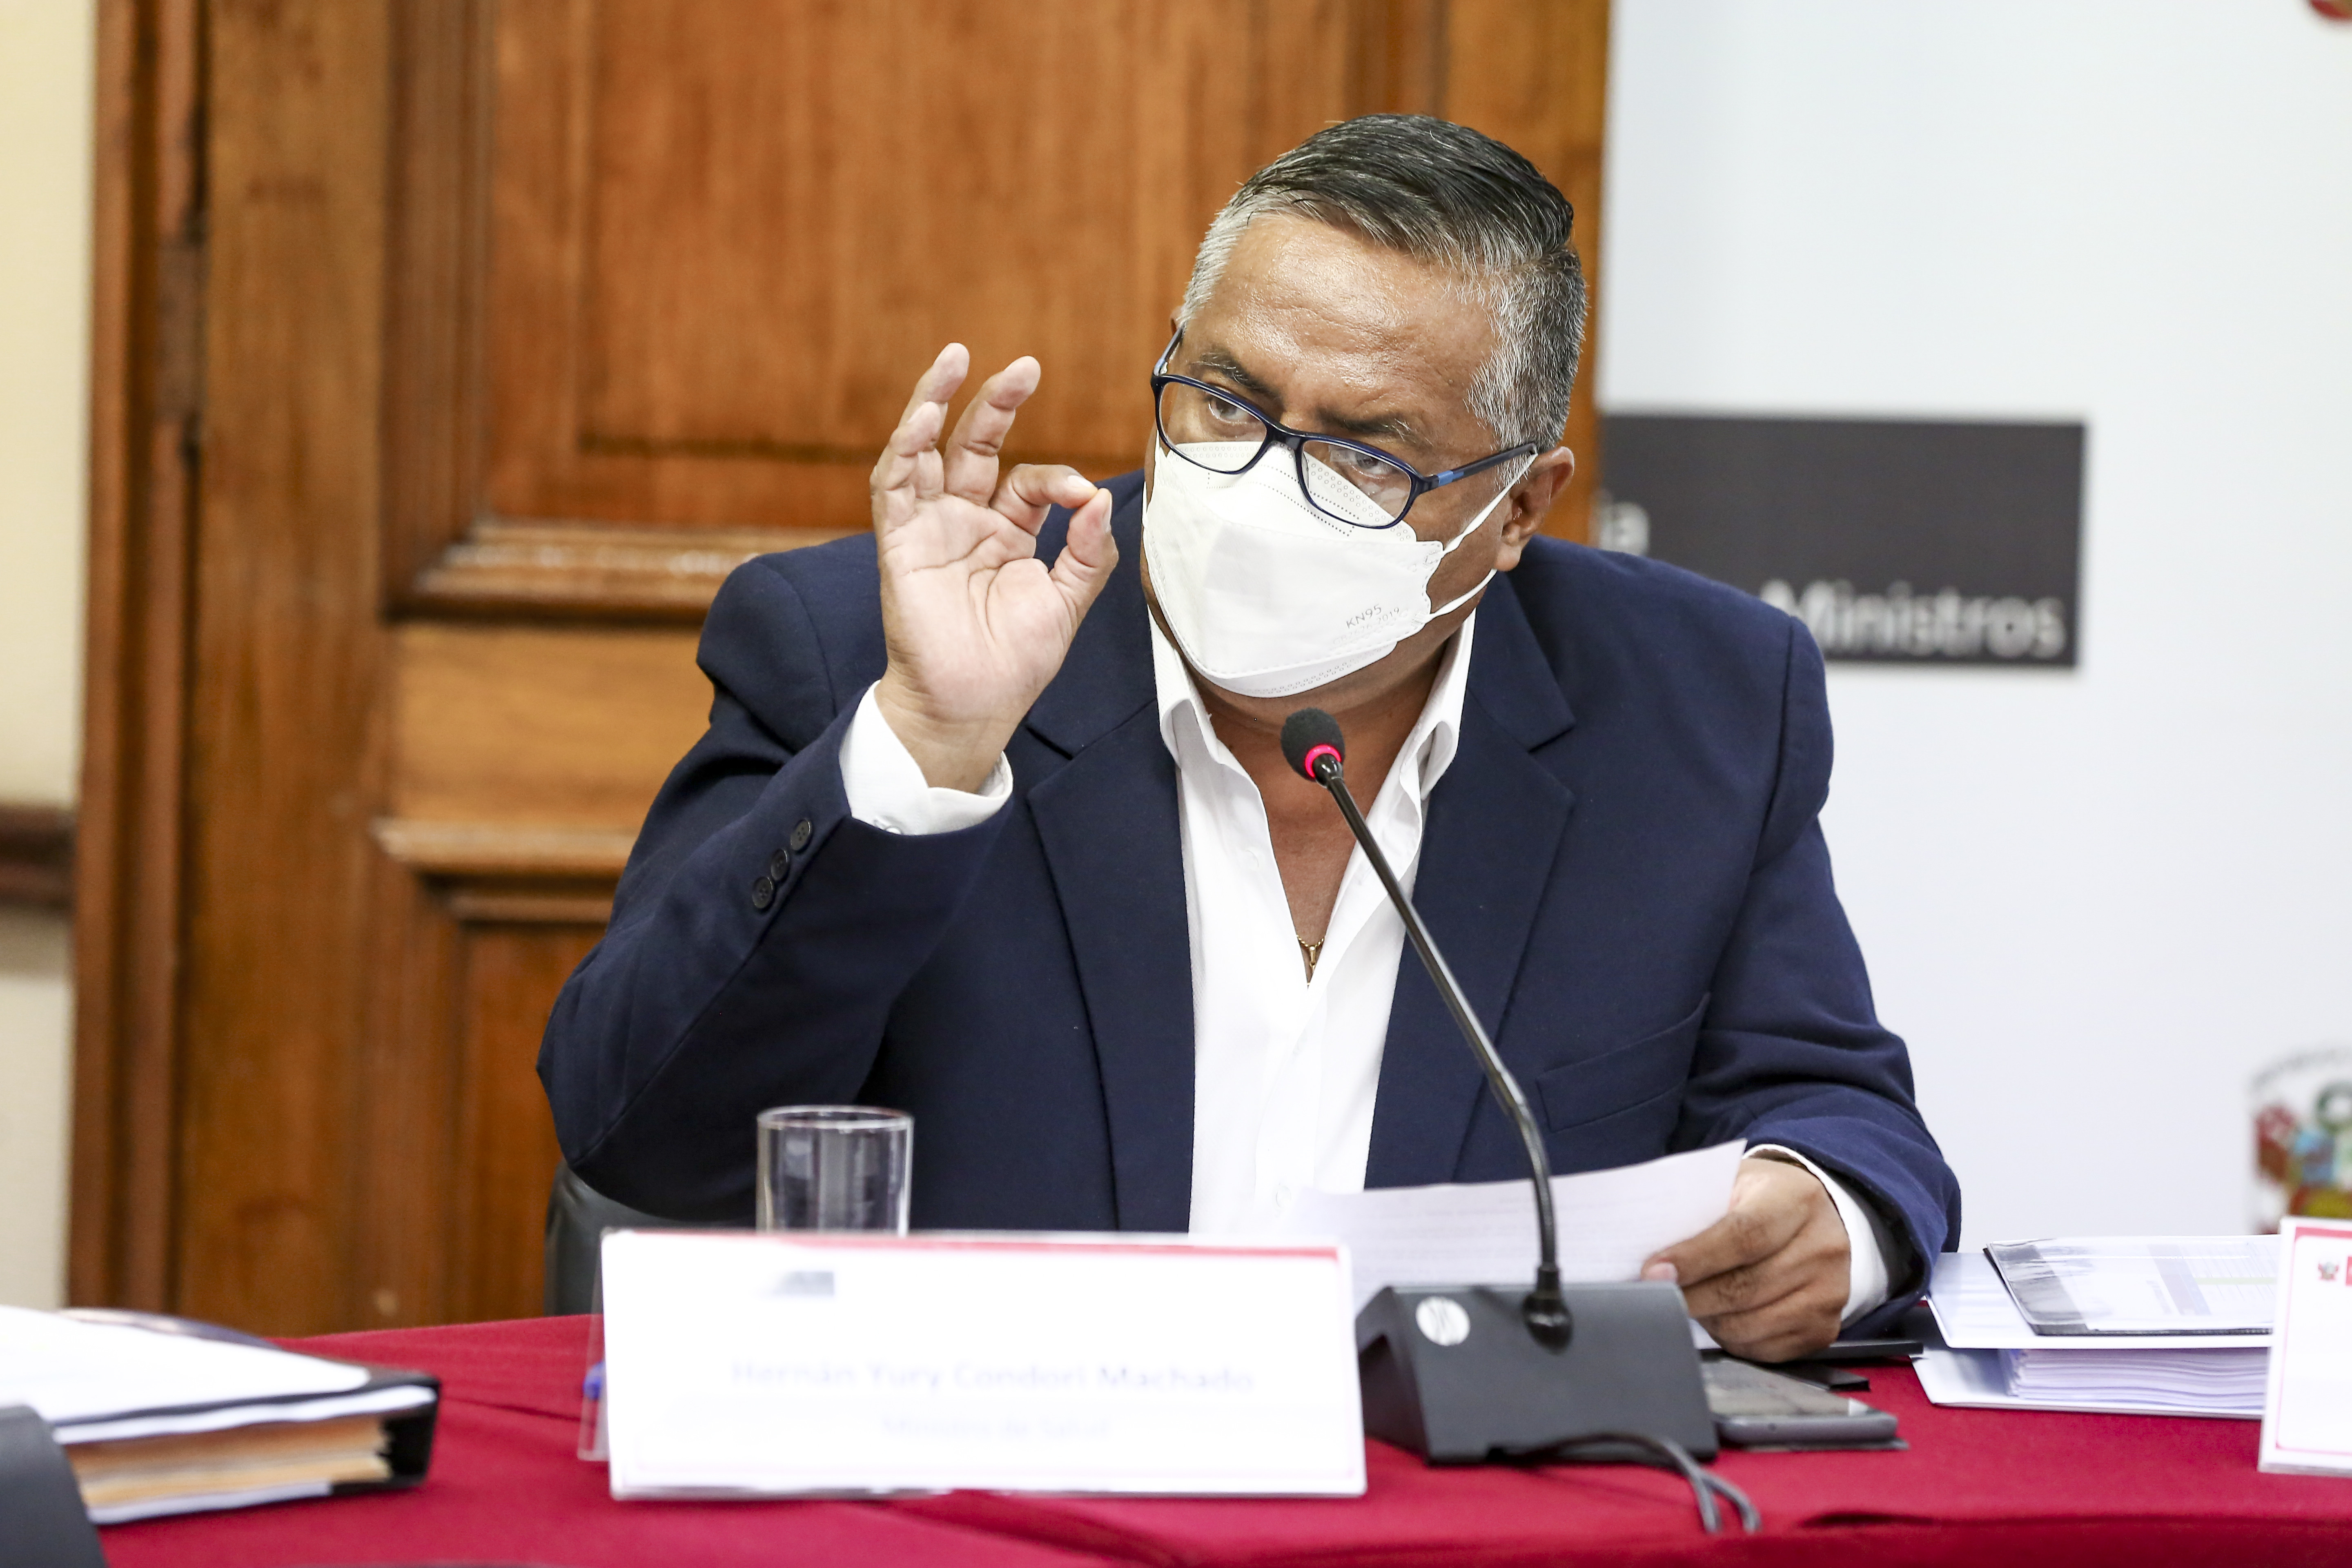 Hernán Condori conferma la scadenza dei vaccini AstraZeneca: «8mila 580 dosi sono scadute»